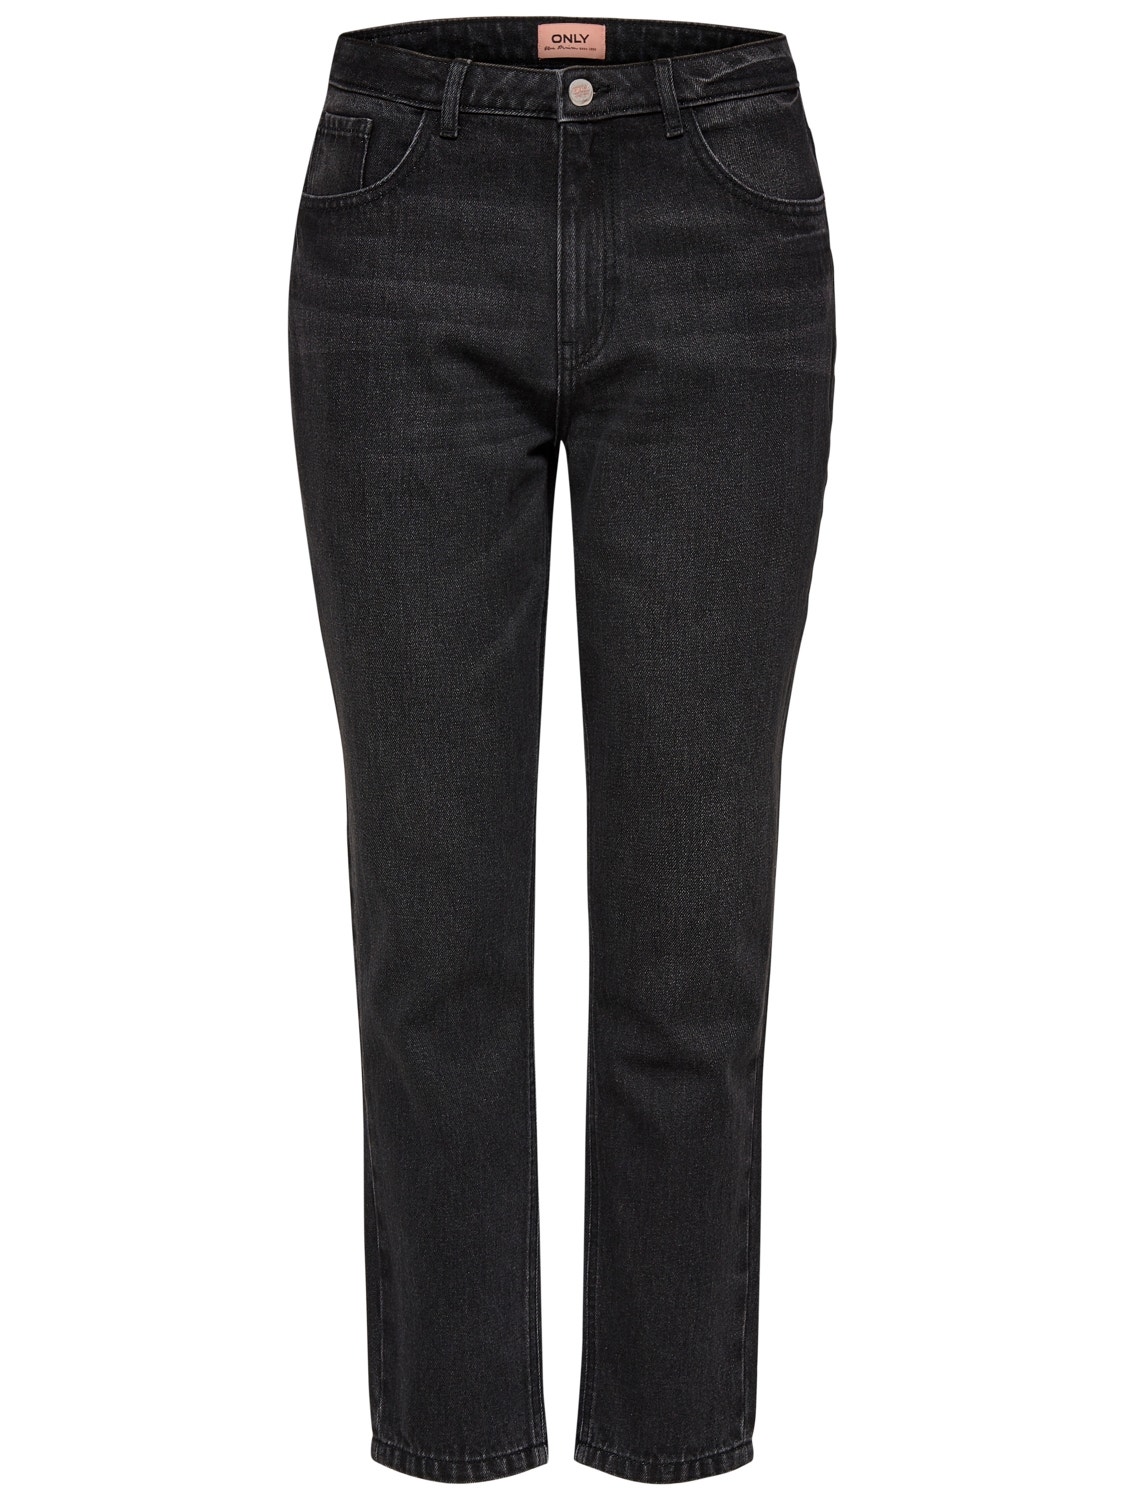 ONLY Jeans Skinny Fit -Black Denim - 15169623